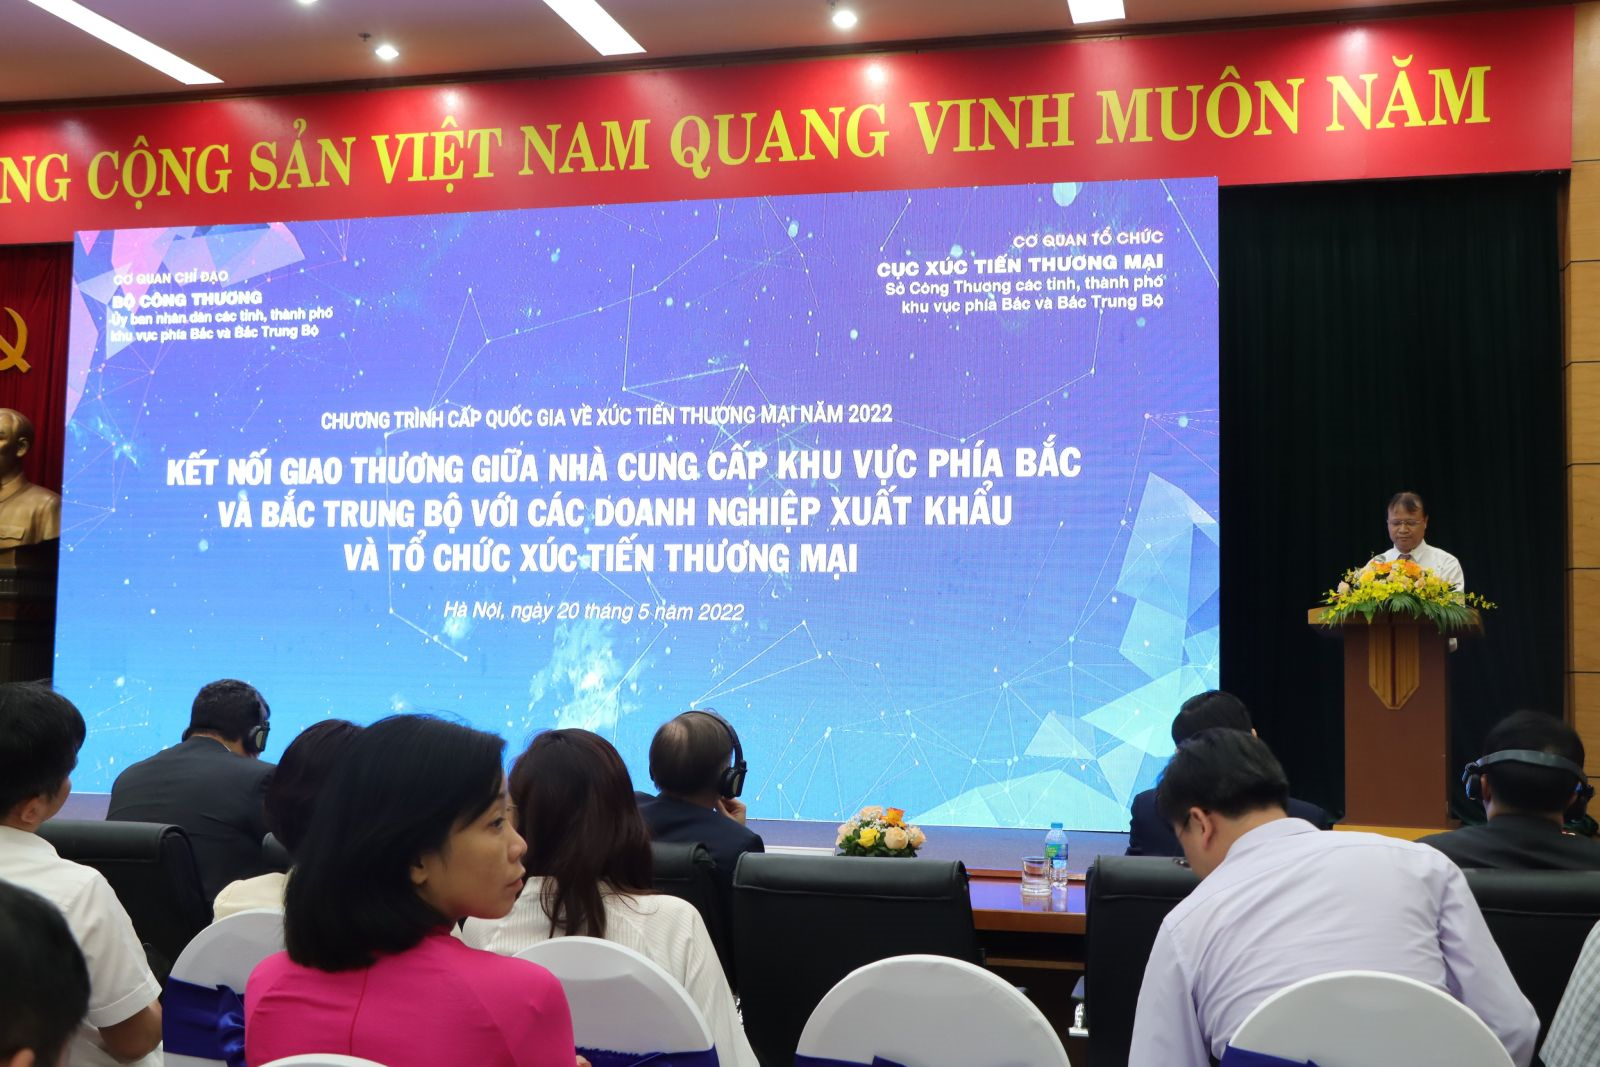 Nông sản tỉnh Sơn La tham gia chương trình kết nối giao thương giữa nhà cung cấp khu vực phía Bắc và Bắc Trung Bộ với các doanh nghiệp  xuất khẩu và tổ chức xúc tiến thương mại